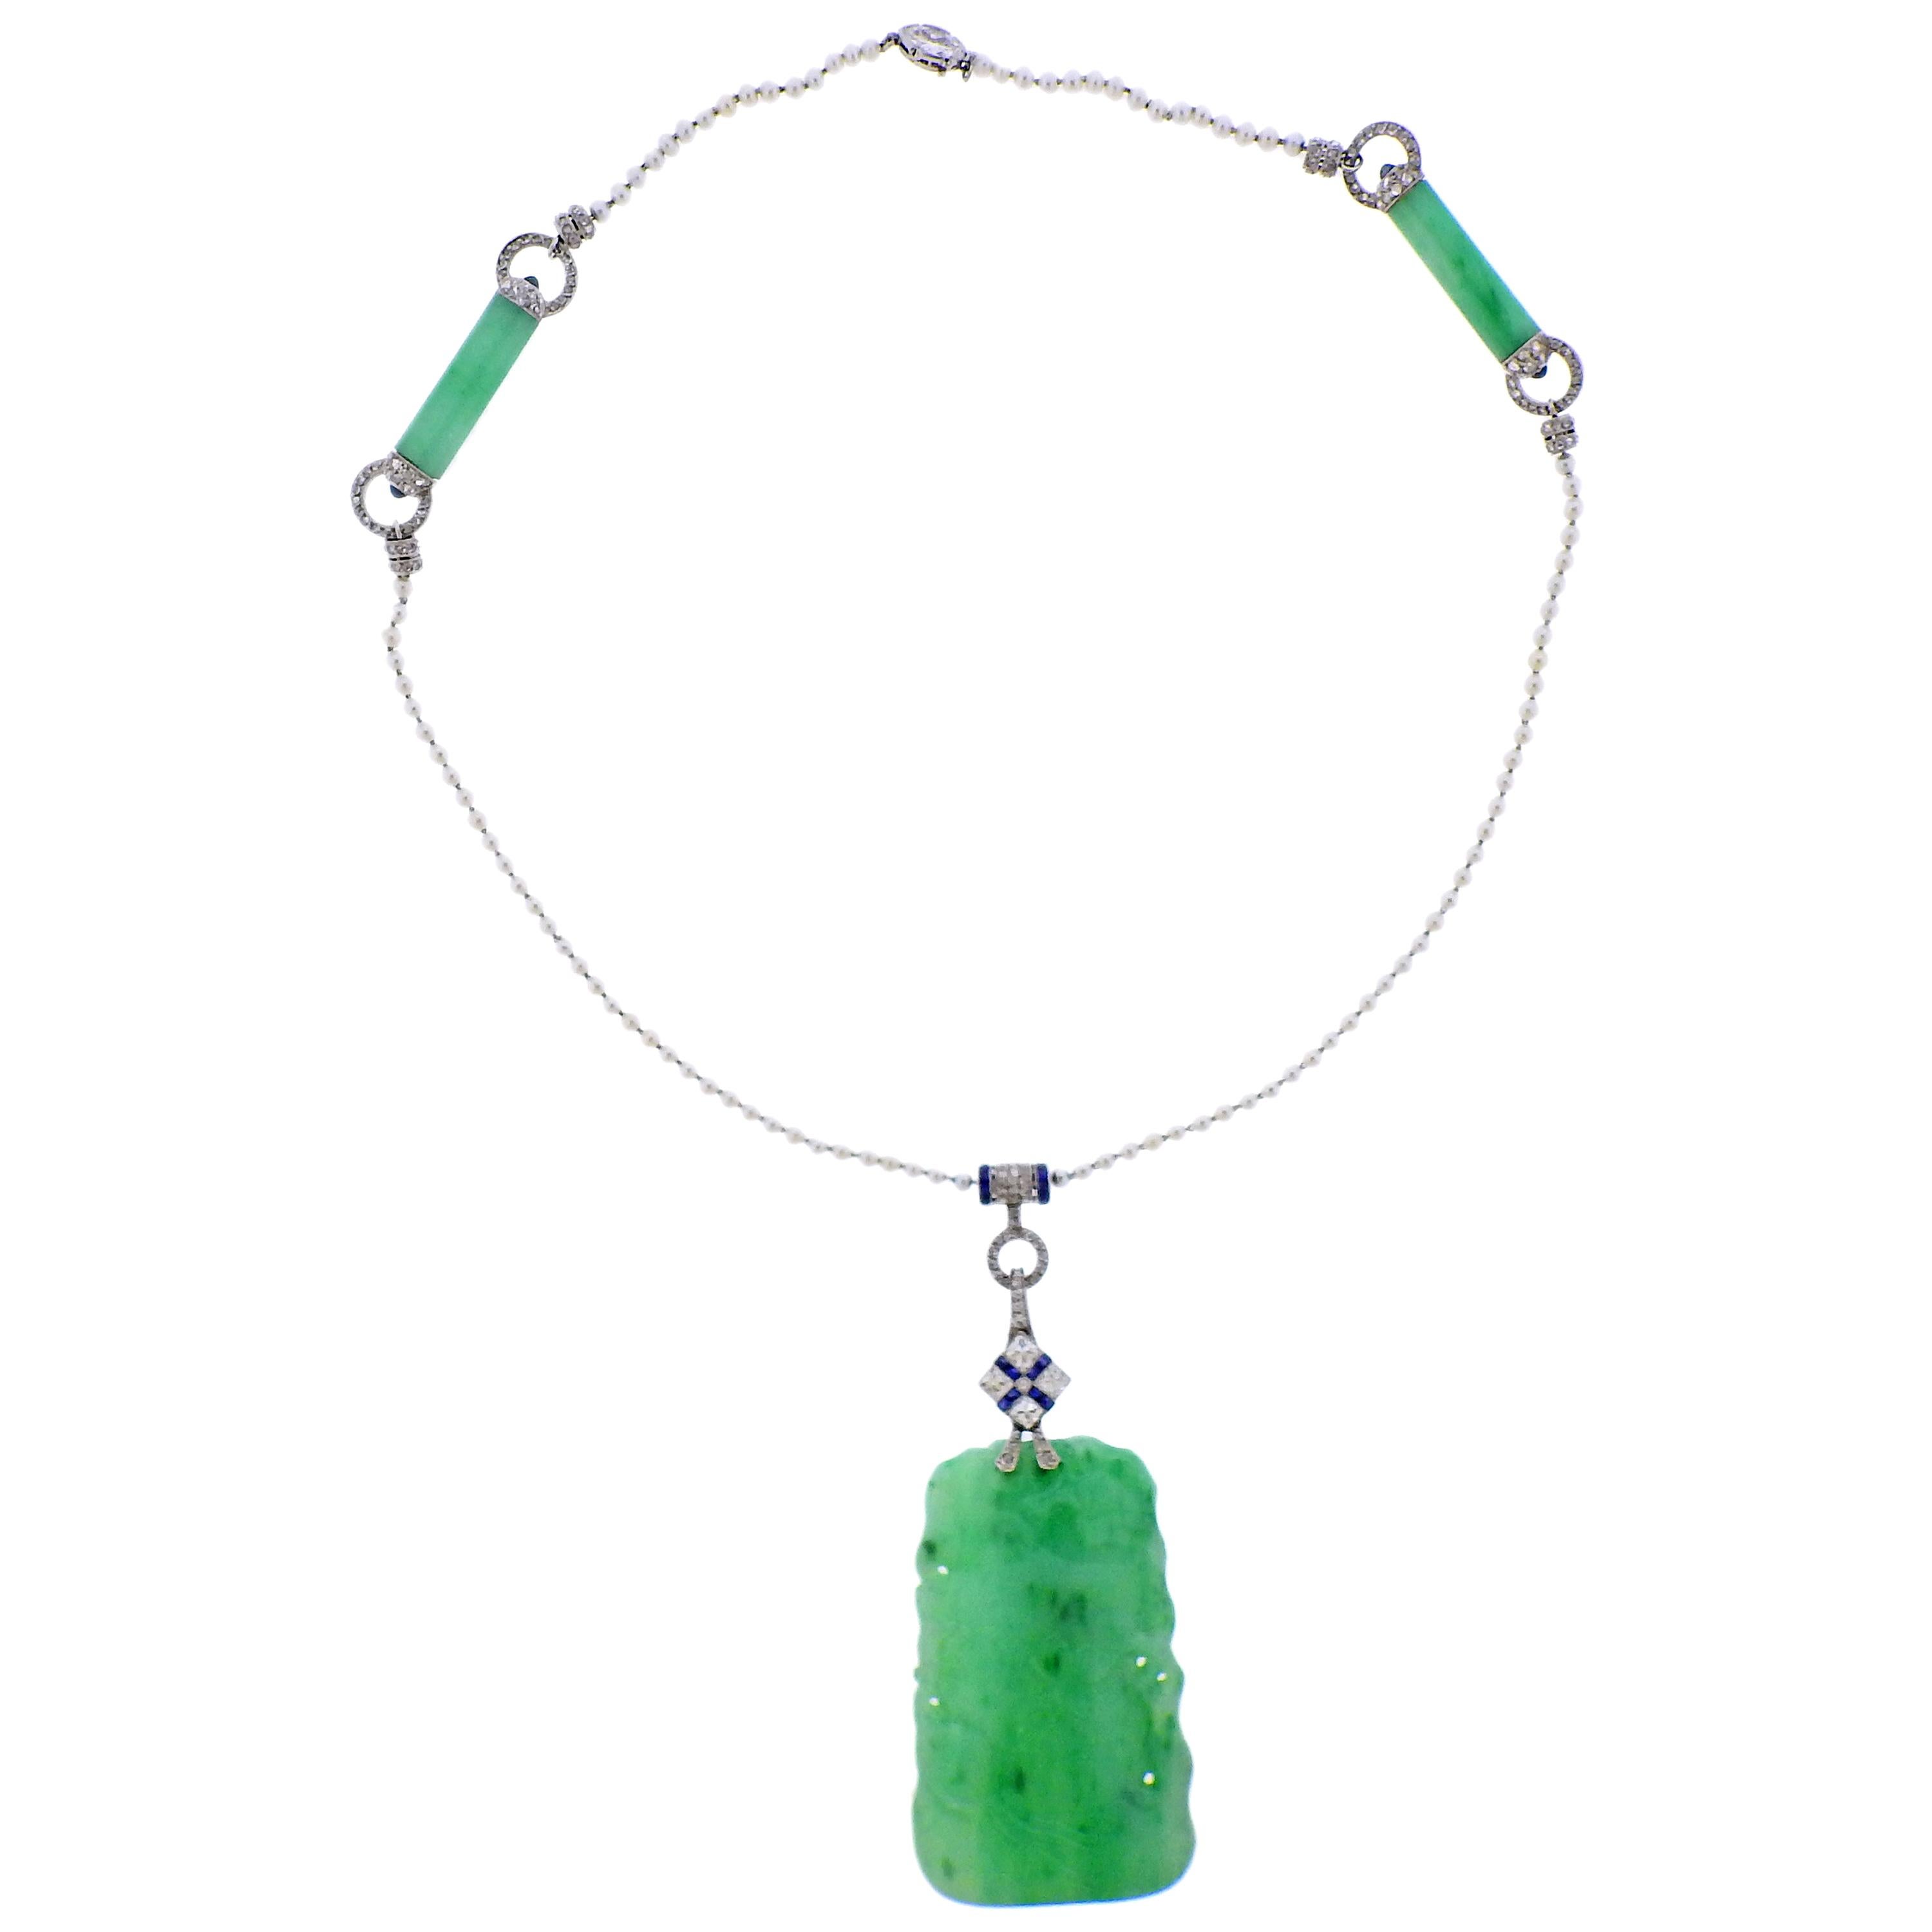 Tiffany & Co., collier pendentif Art déco en platine avec perle de jade sculptée, diamant et saphir